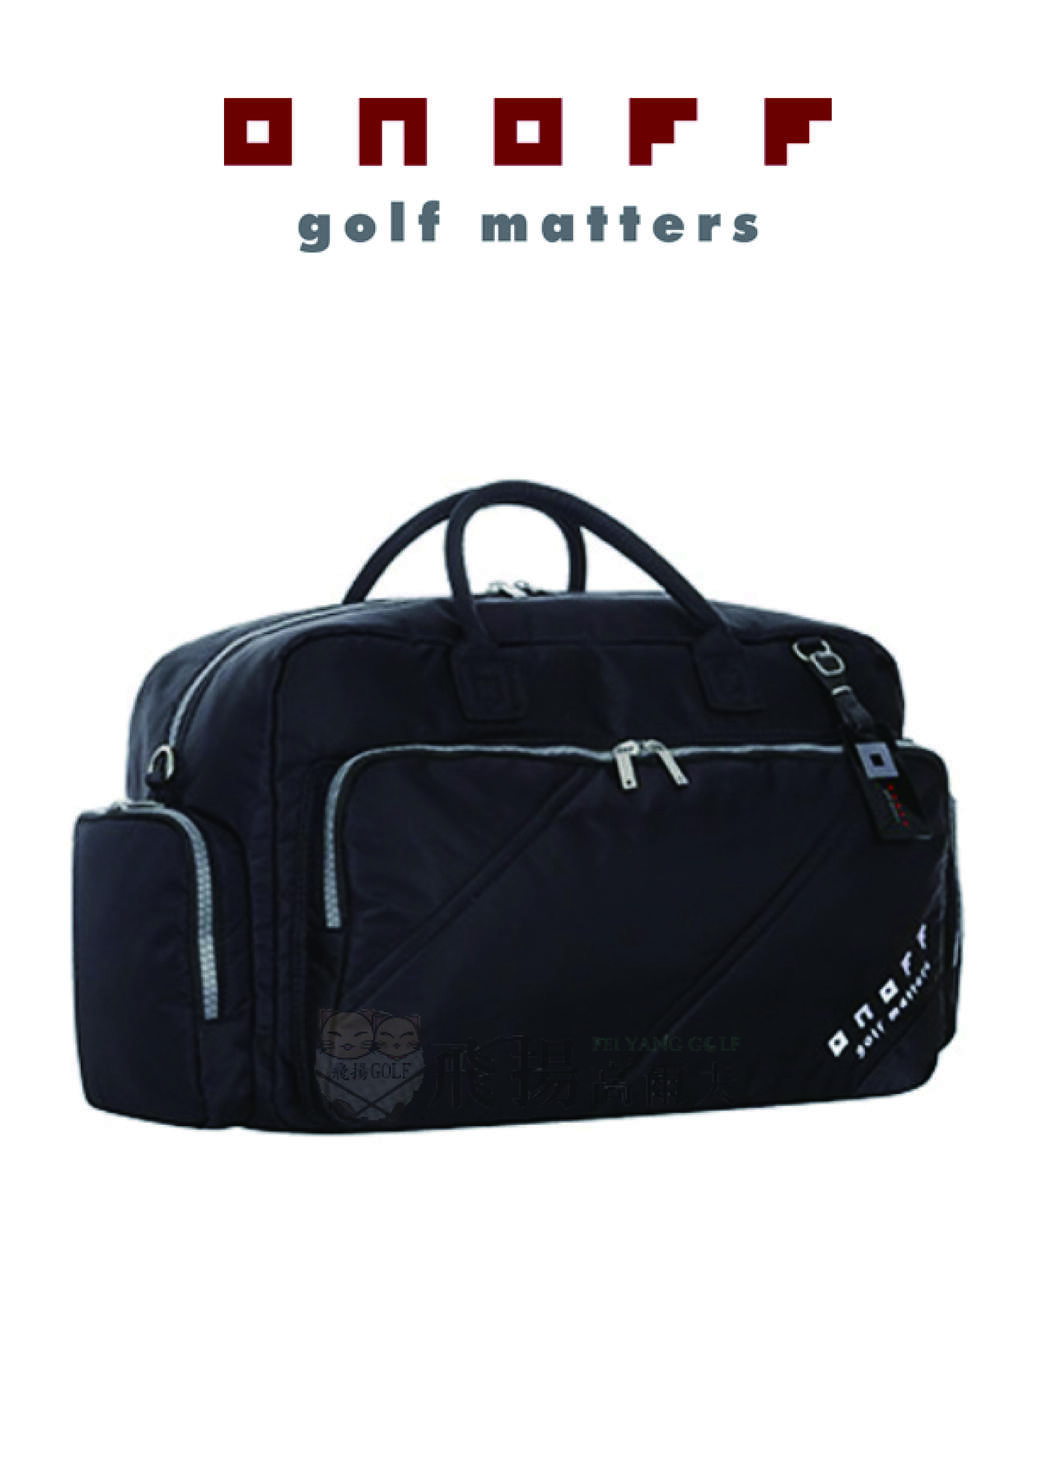 【飛揚高爾夫】ONOFF 衣物袋 #OV5422-02, 黑 (Global version) 衣物袋